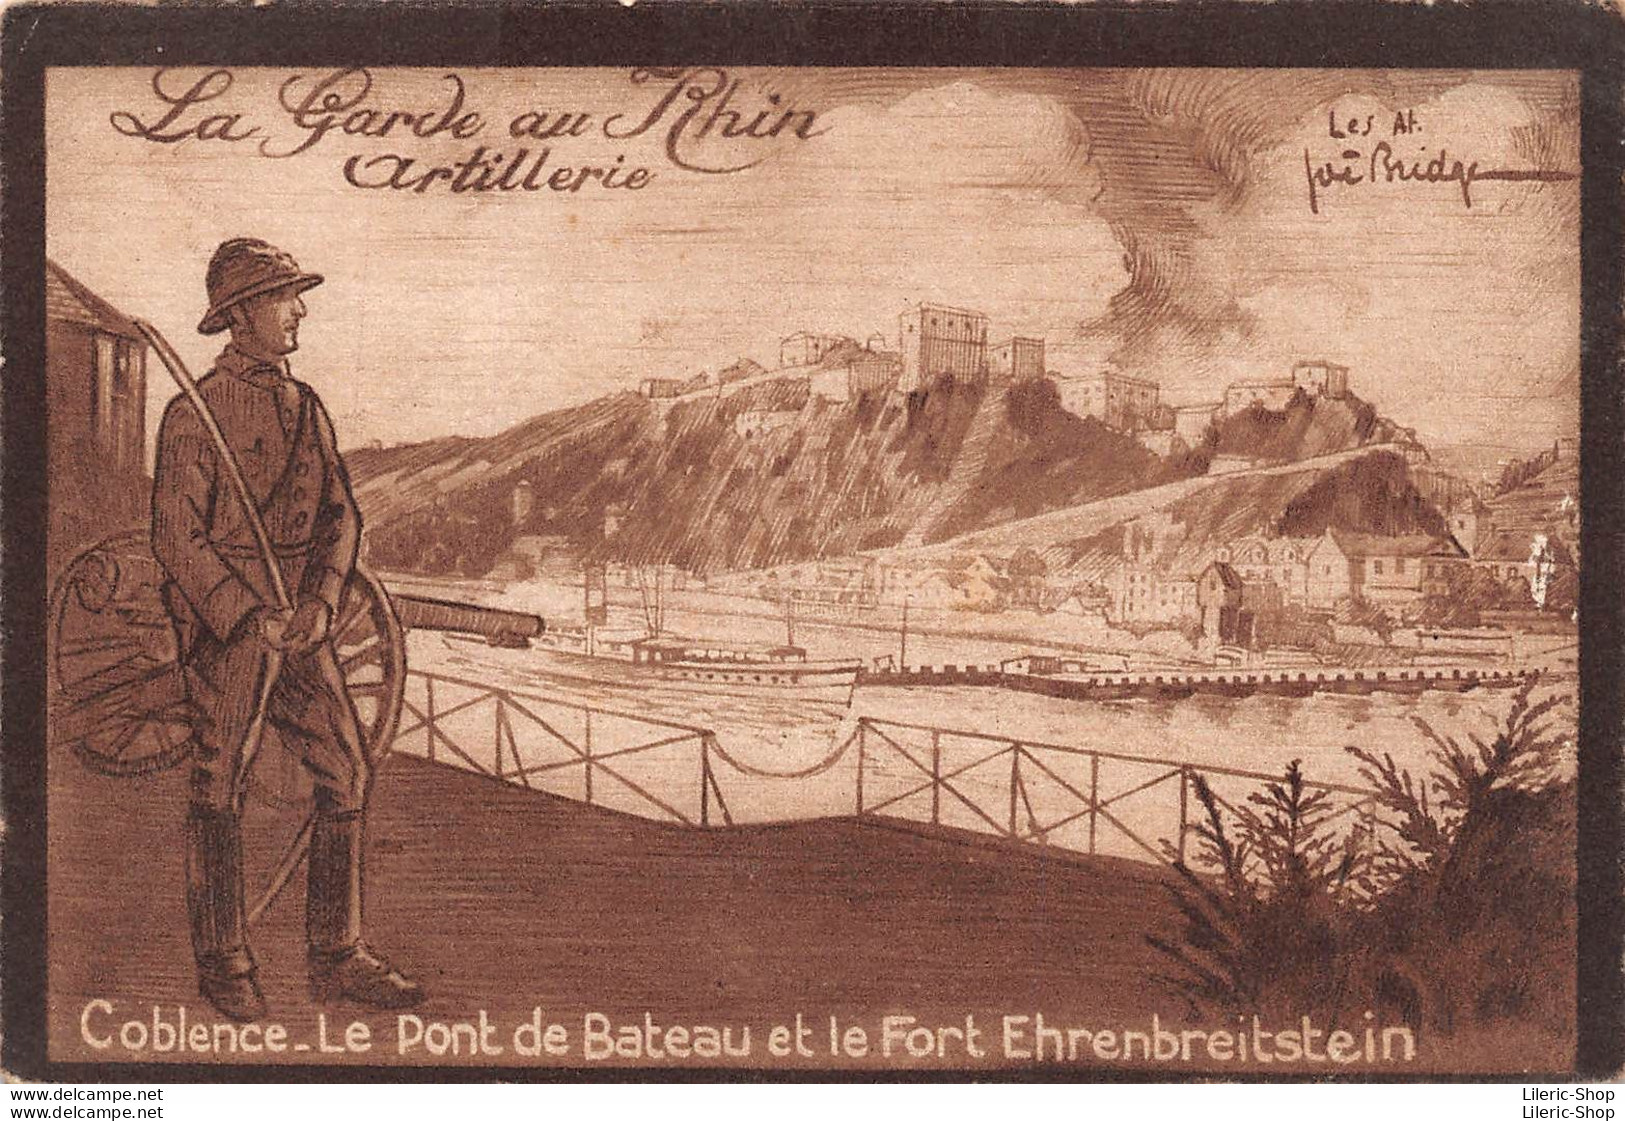 La Garde Au Rhin Artillerie Coblence. Le Pont De Bateau Et Le Fort Ehrenbreitstein Illustrateur Joë BRIDGE - Caserme